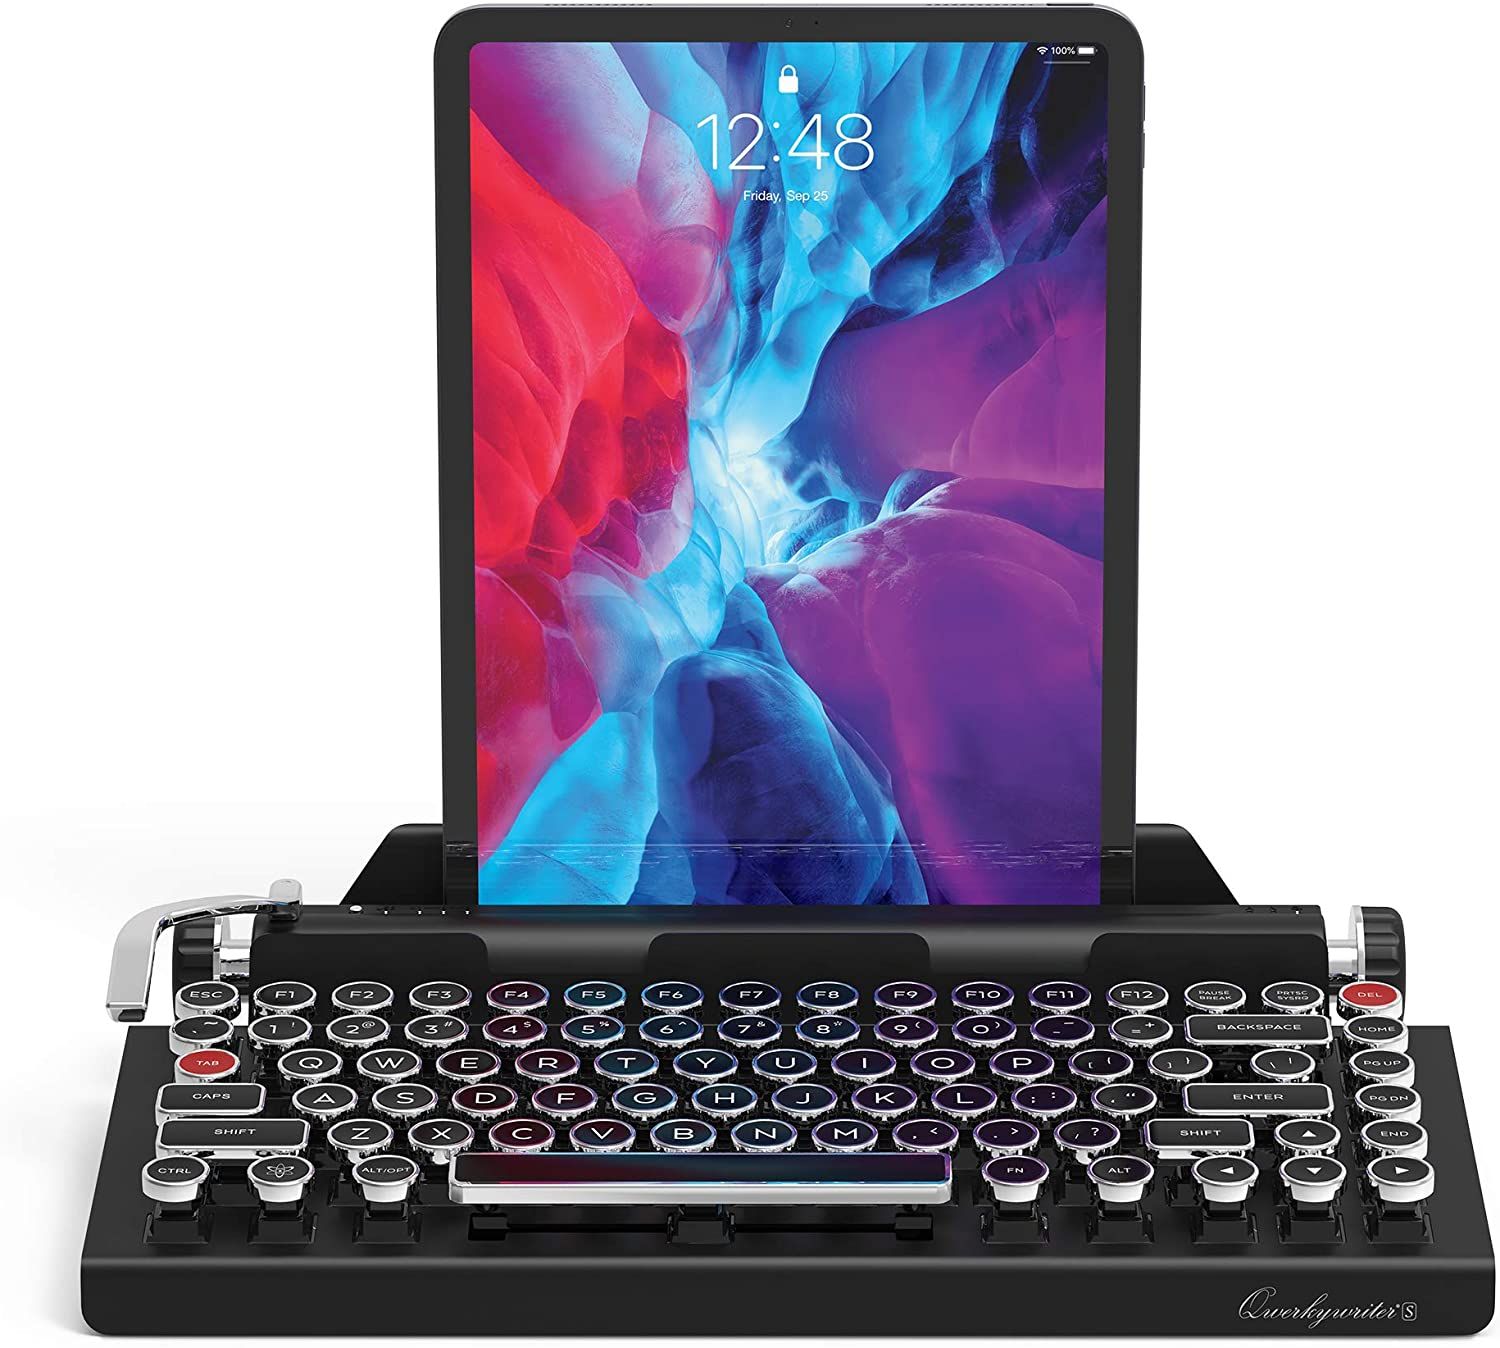 Retro Keyboard - 8 idee regalo perfette per chi ama la tecnologia e i gadget retrò